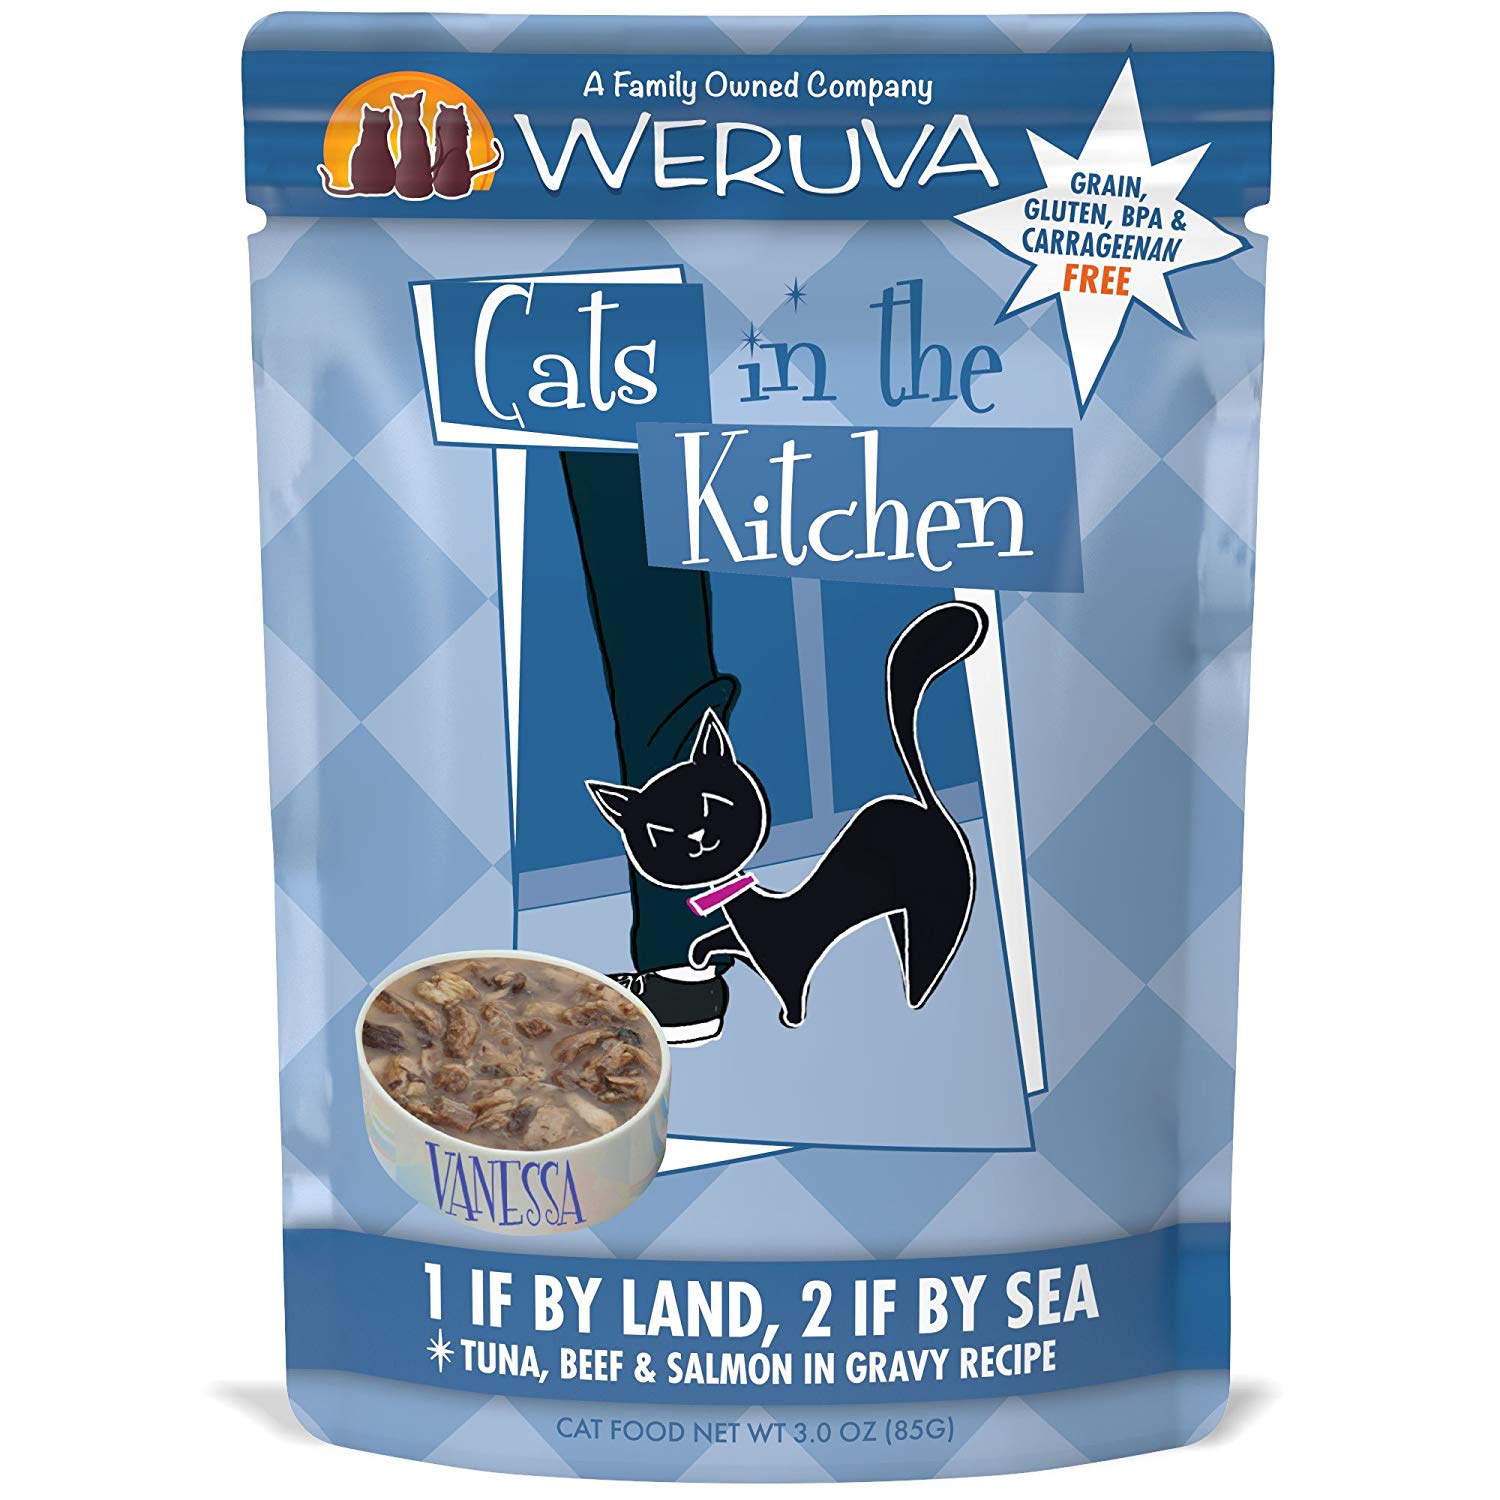 凱特美廚主食貓餐包-海陸總動員
Cats in the Kitchen-1 if By Land, 2 if By Sea